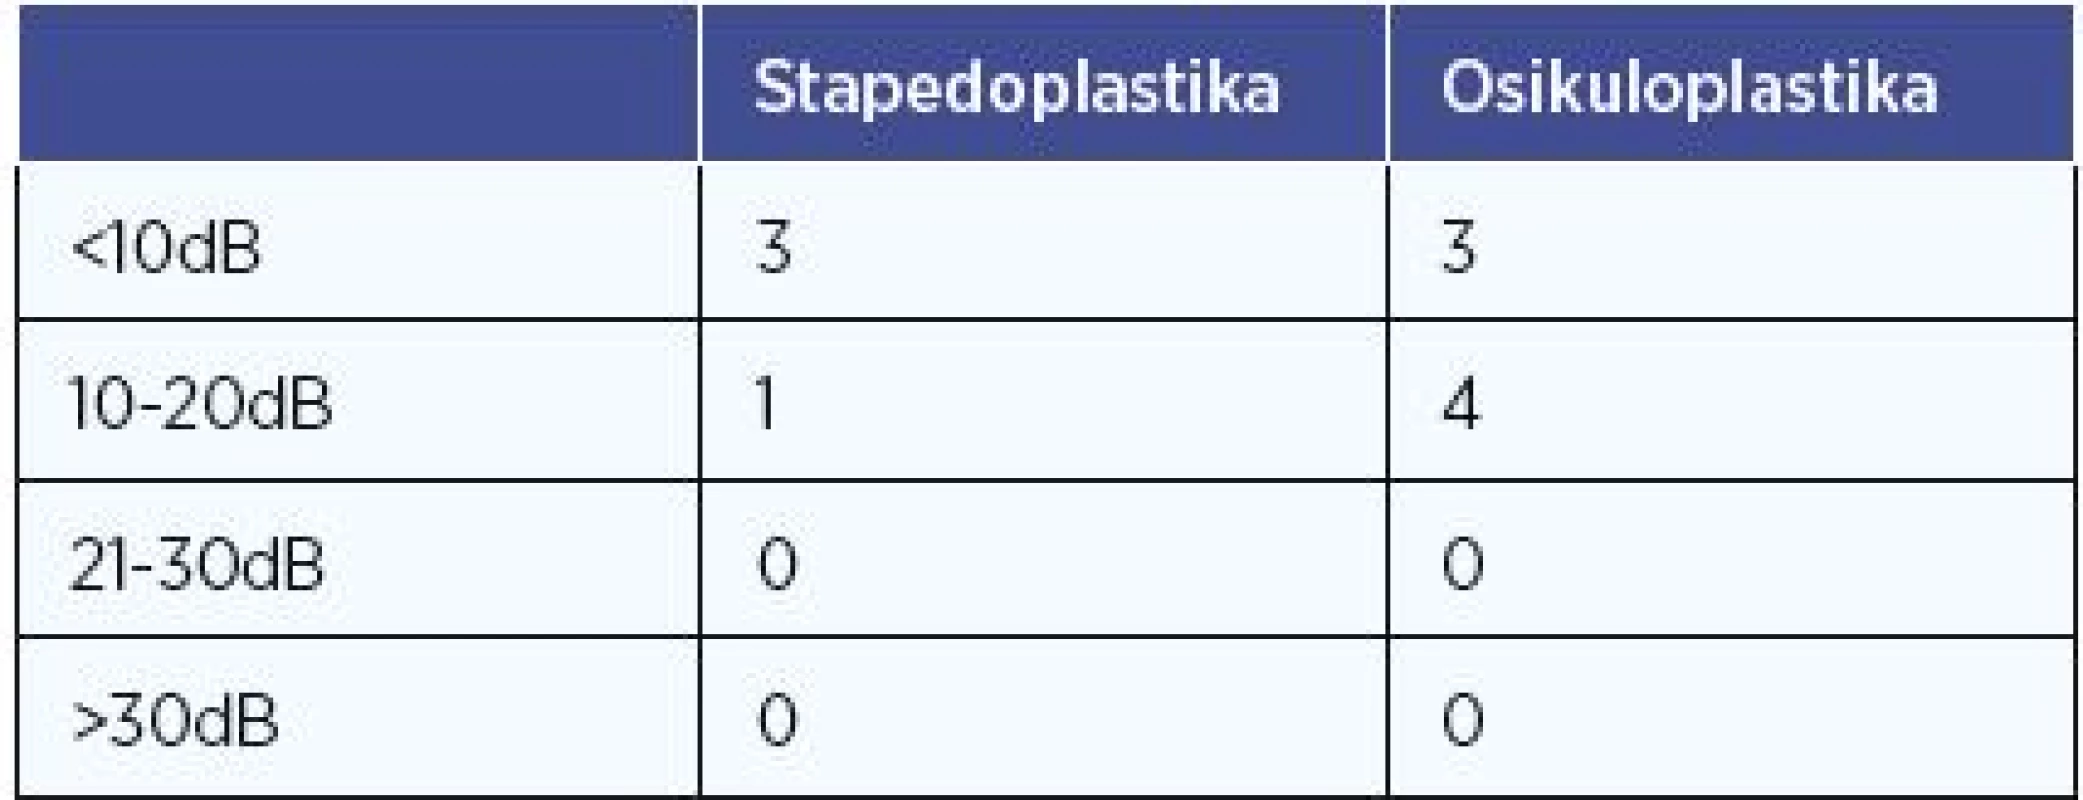 Pooperační kochleární rezerva po stapedo- a osikuloplastice.